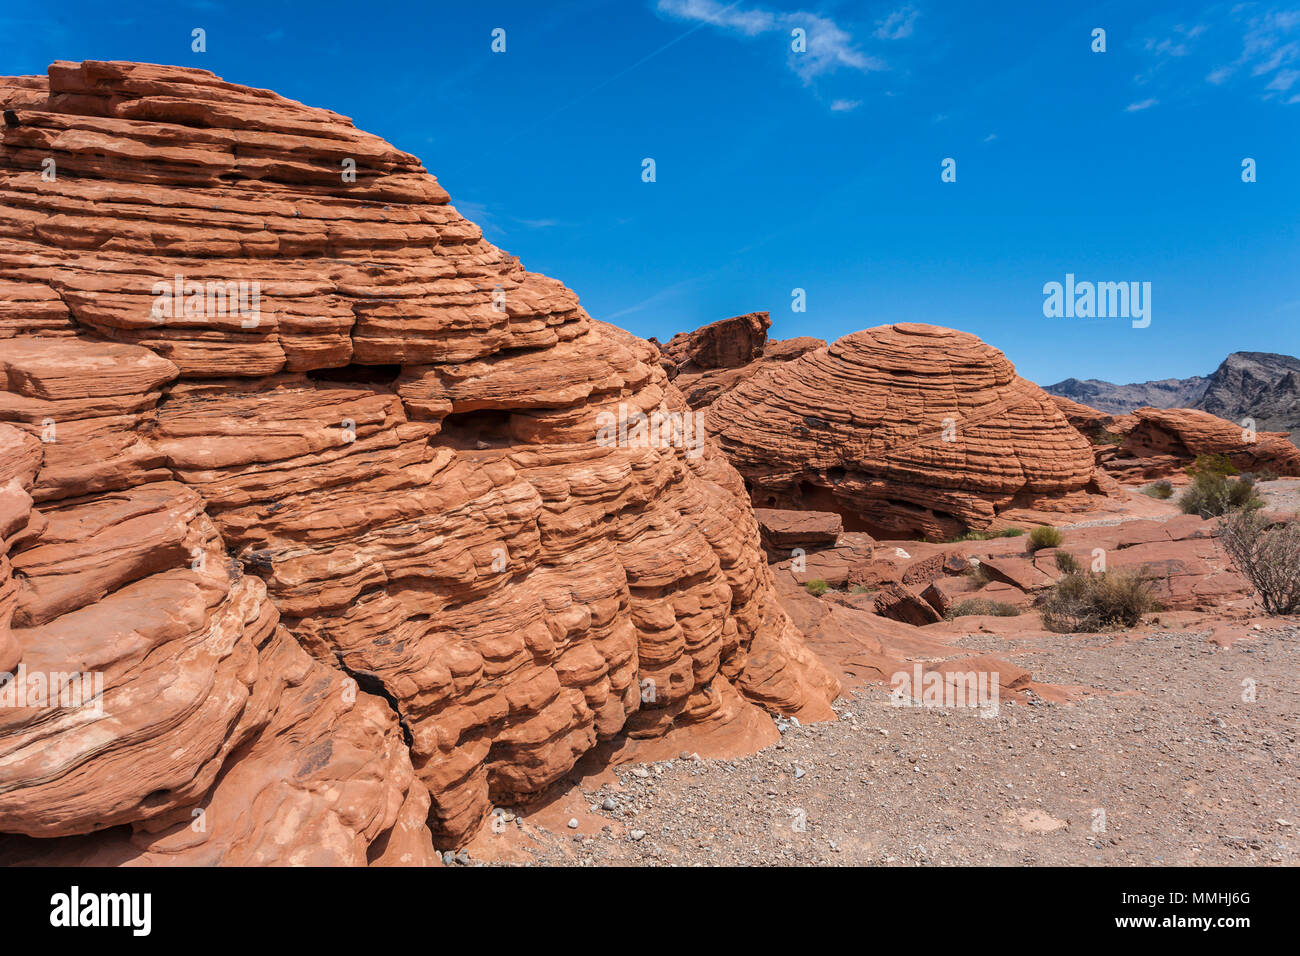 Bienenstock förmigen red Aztec Sandstein Felsformationen im Valley of Fire State Park in Overton, Nevada nordöstlich von Las Vegas Stockfoto